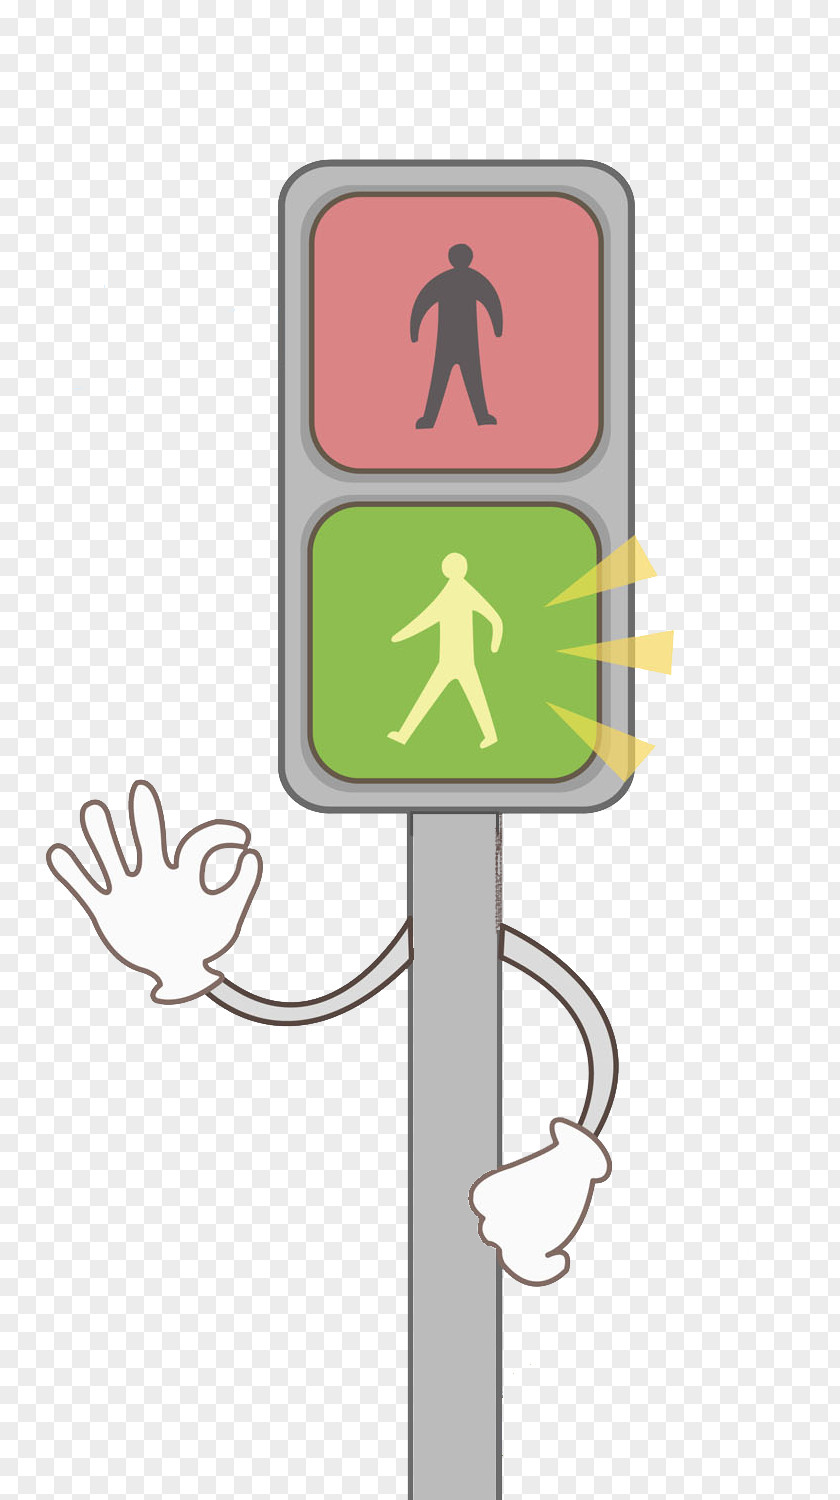 A Traffic Light Green Cartoon Illustration PNG